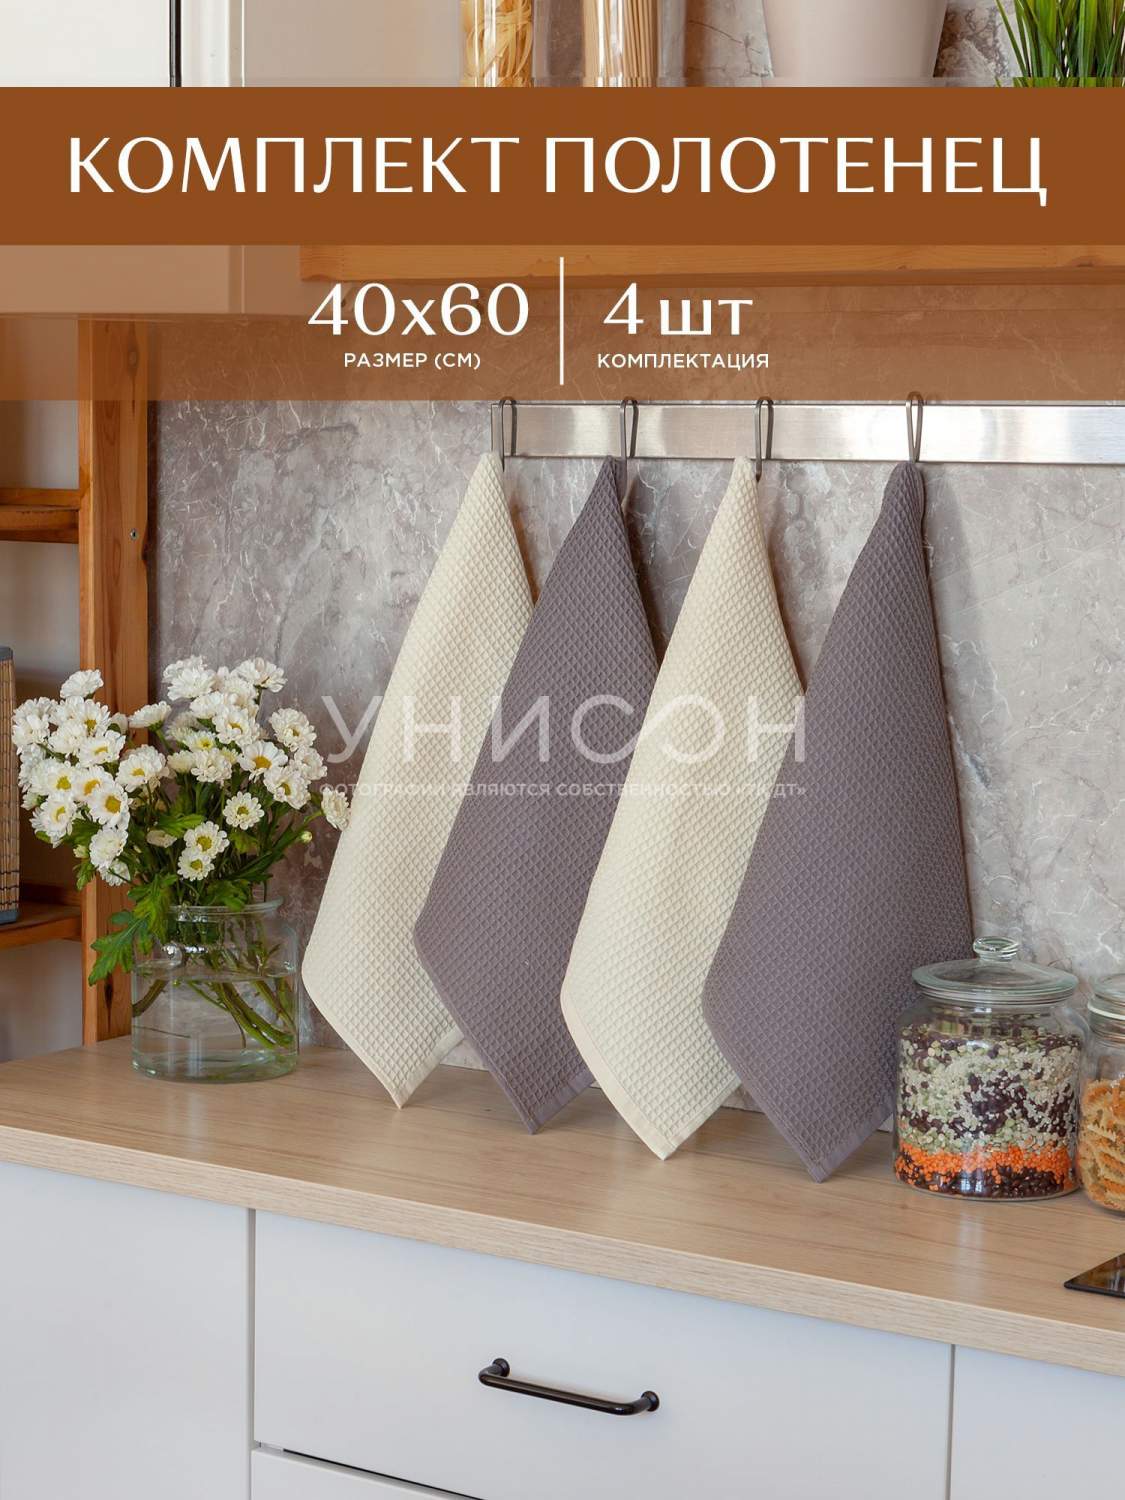  кухонных полотенец -  наборы полотенец для кухни, цены на .